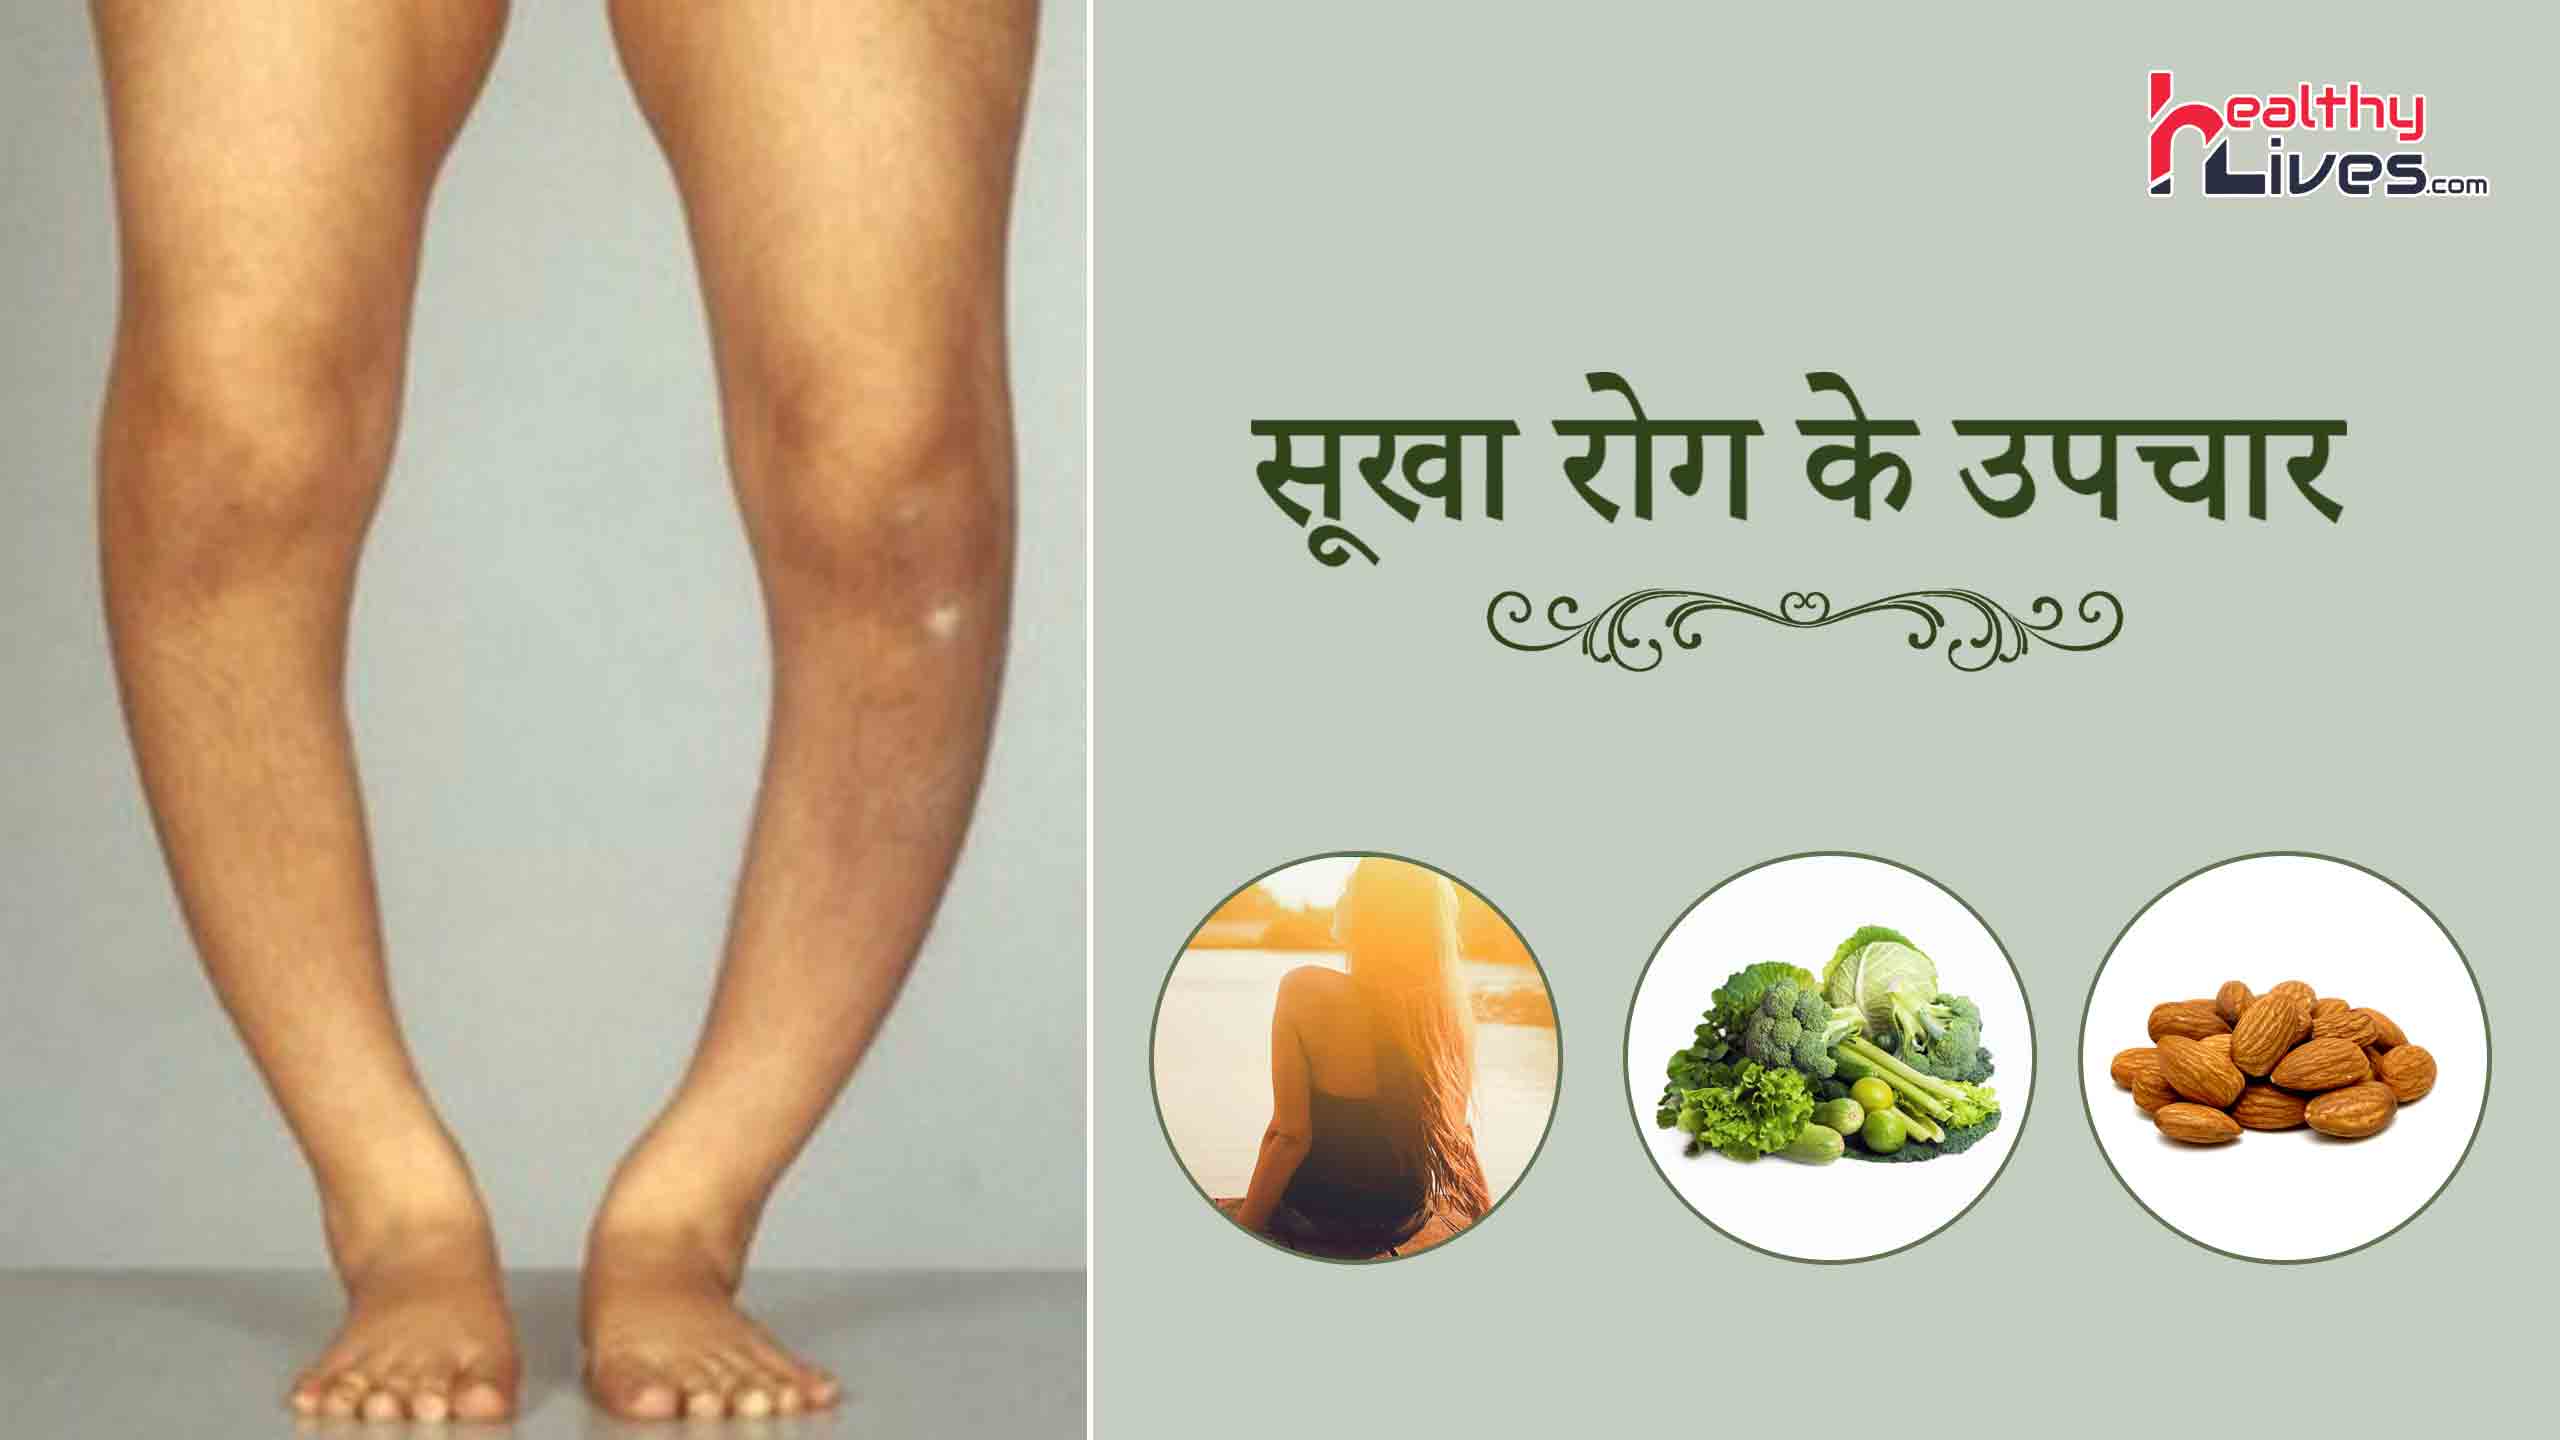 Rickets Treatment in Hindi: जानिए सूखा रोग के आसान घरेलू उपचार